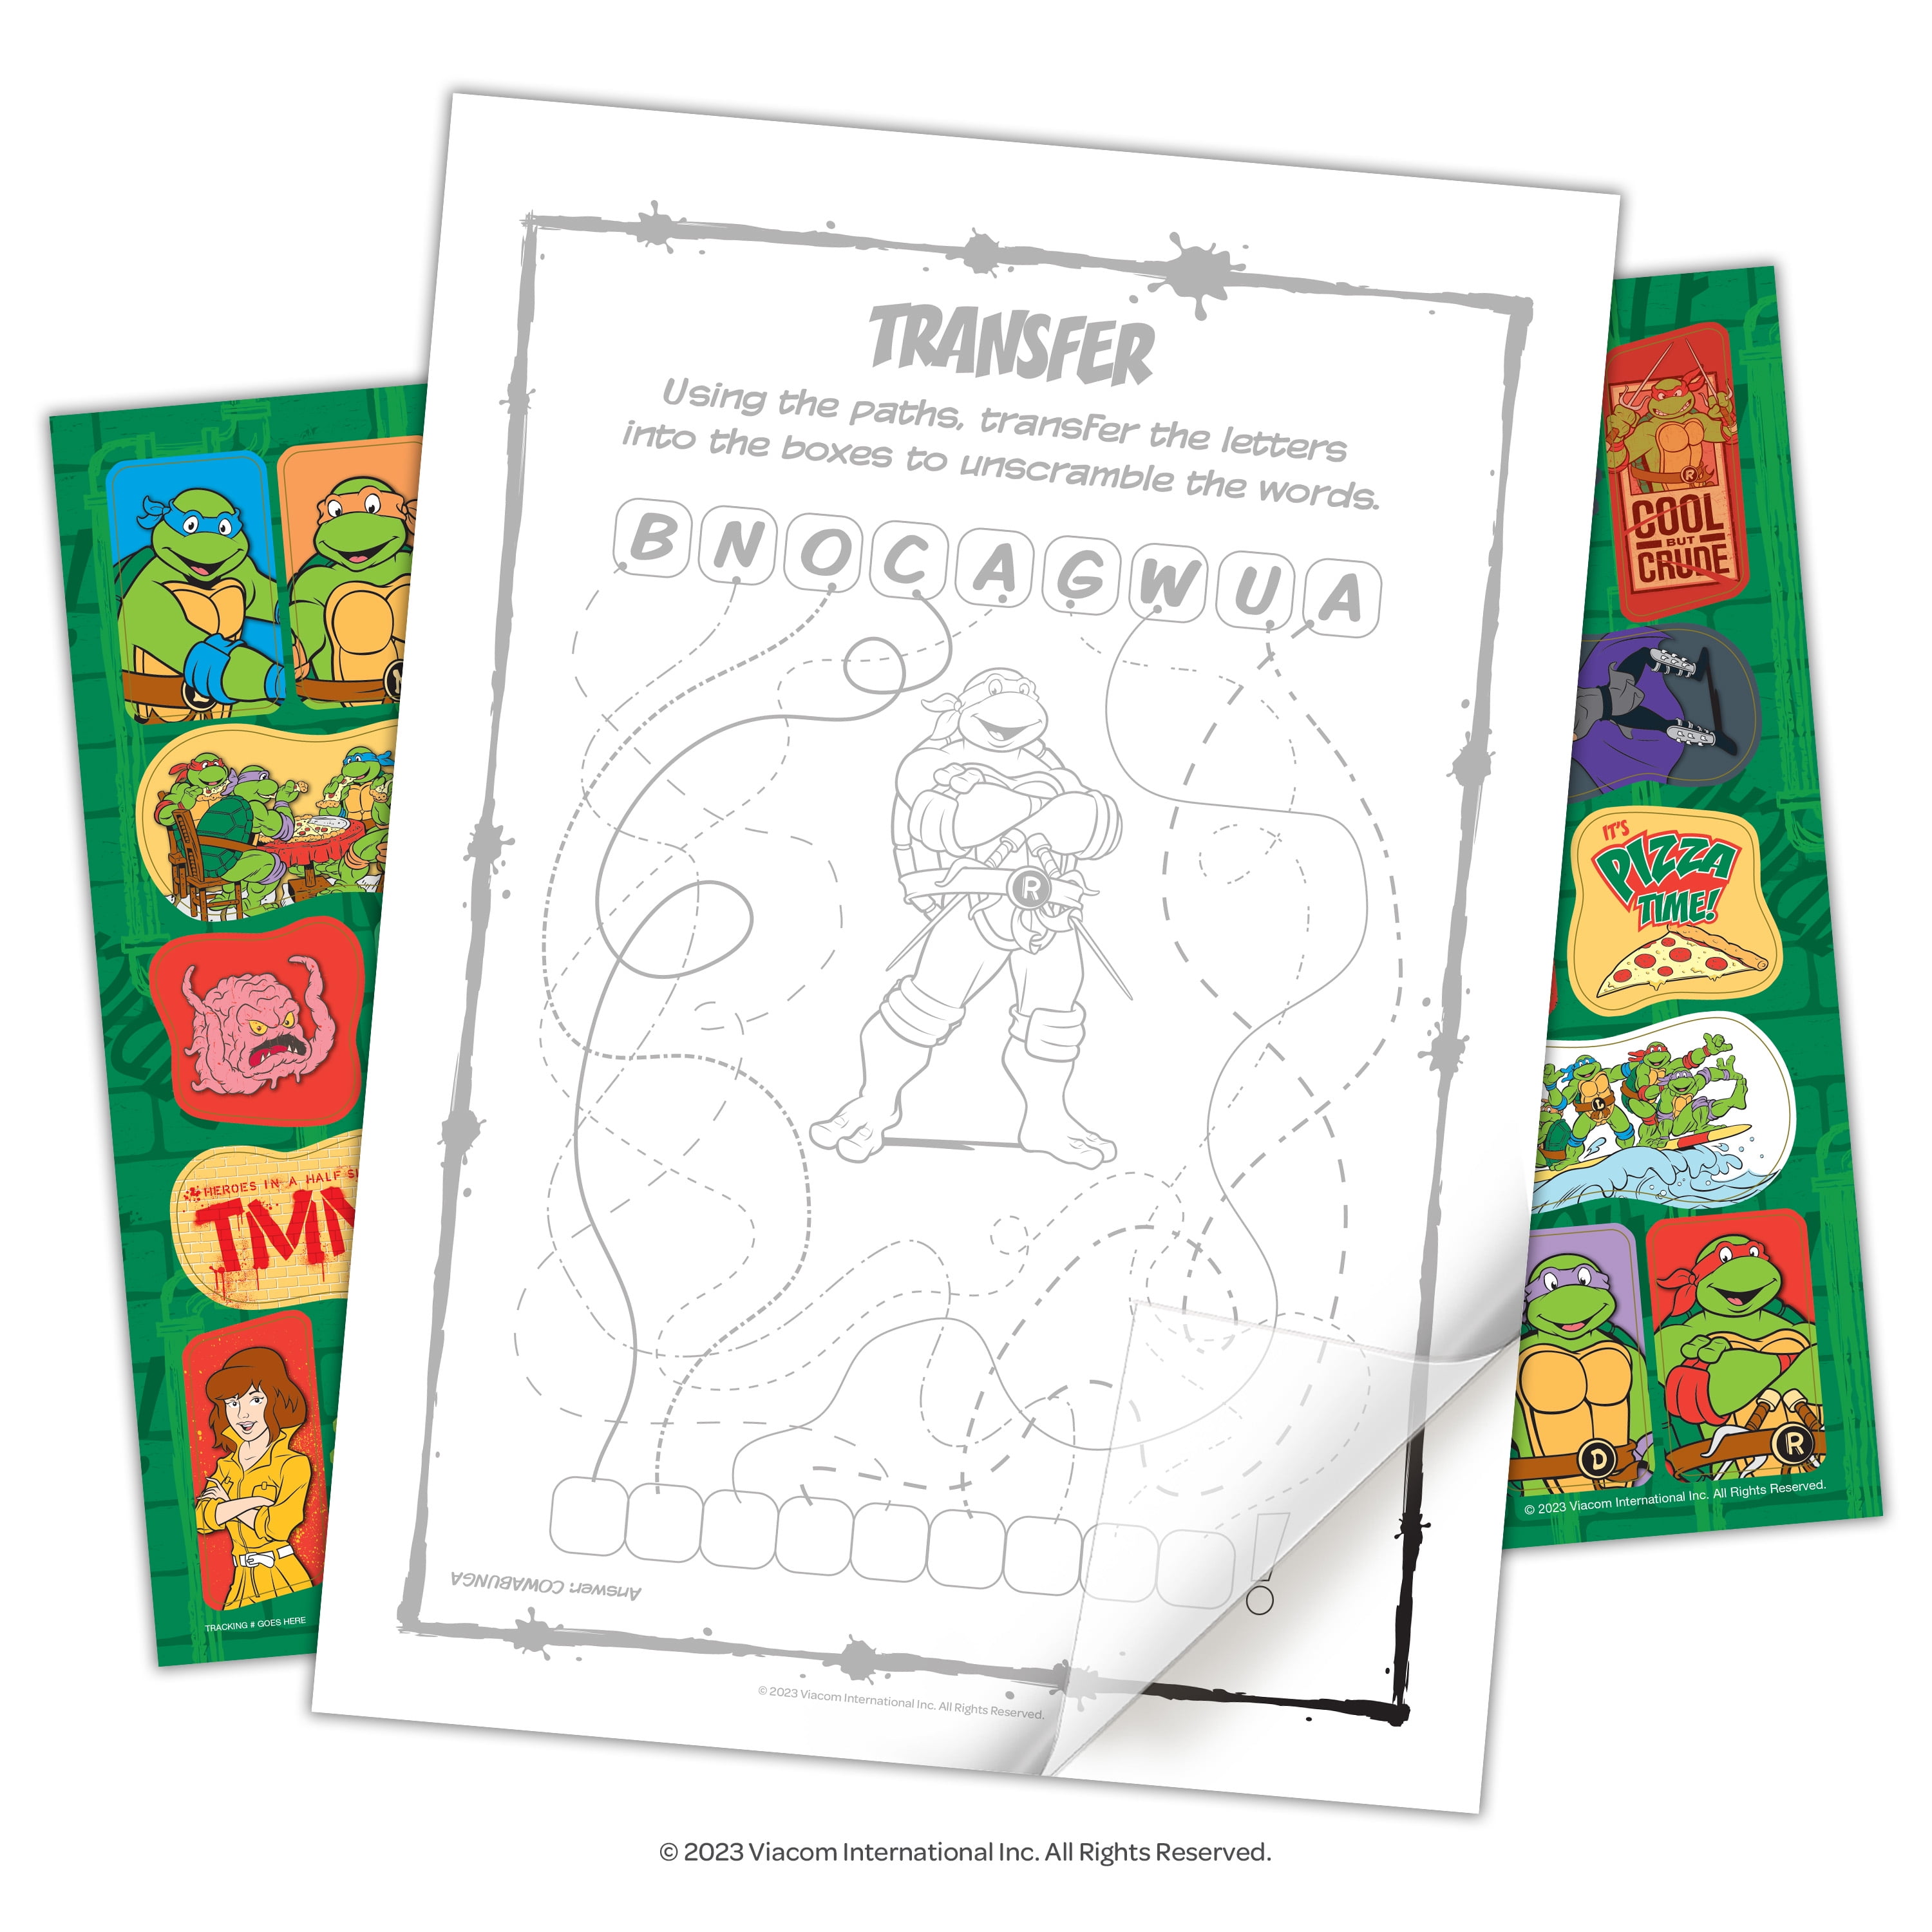 Vintage Teenage Mutant Ninja Turtles Coloring & Activity Book 2012 Unused